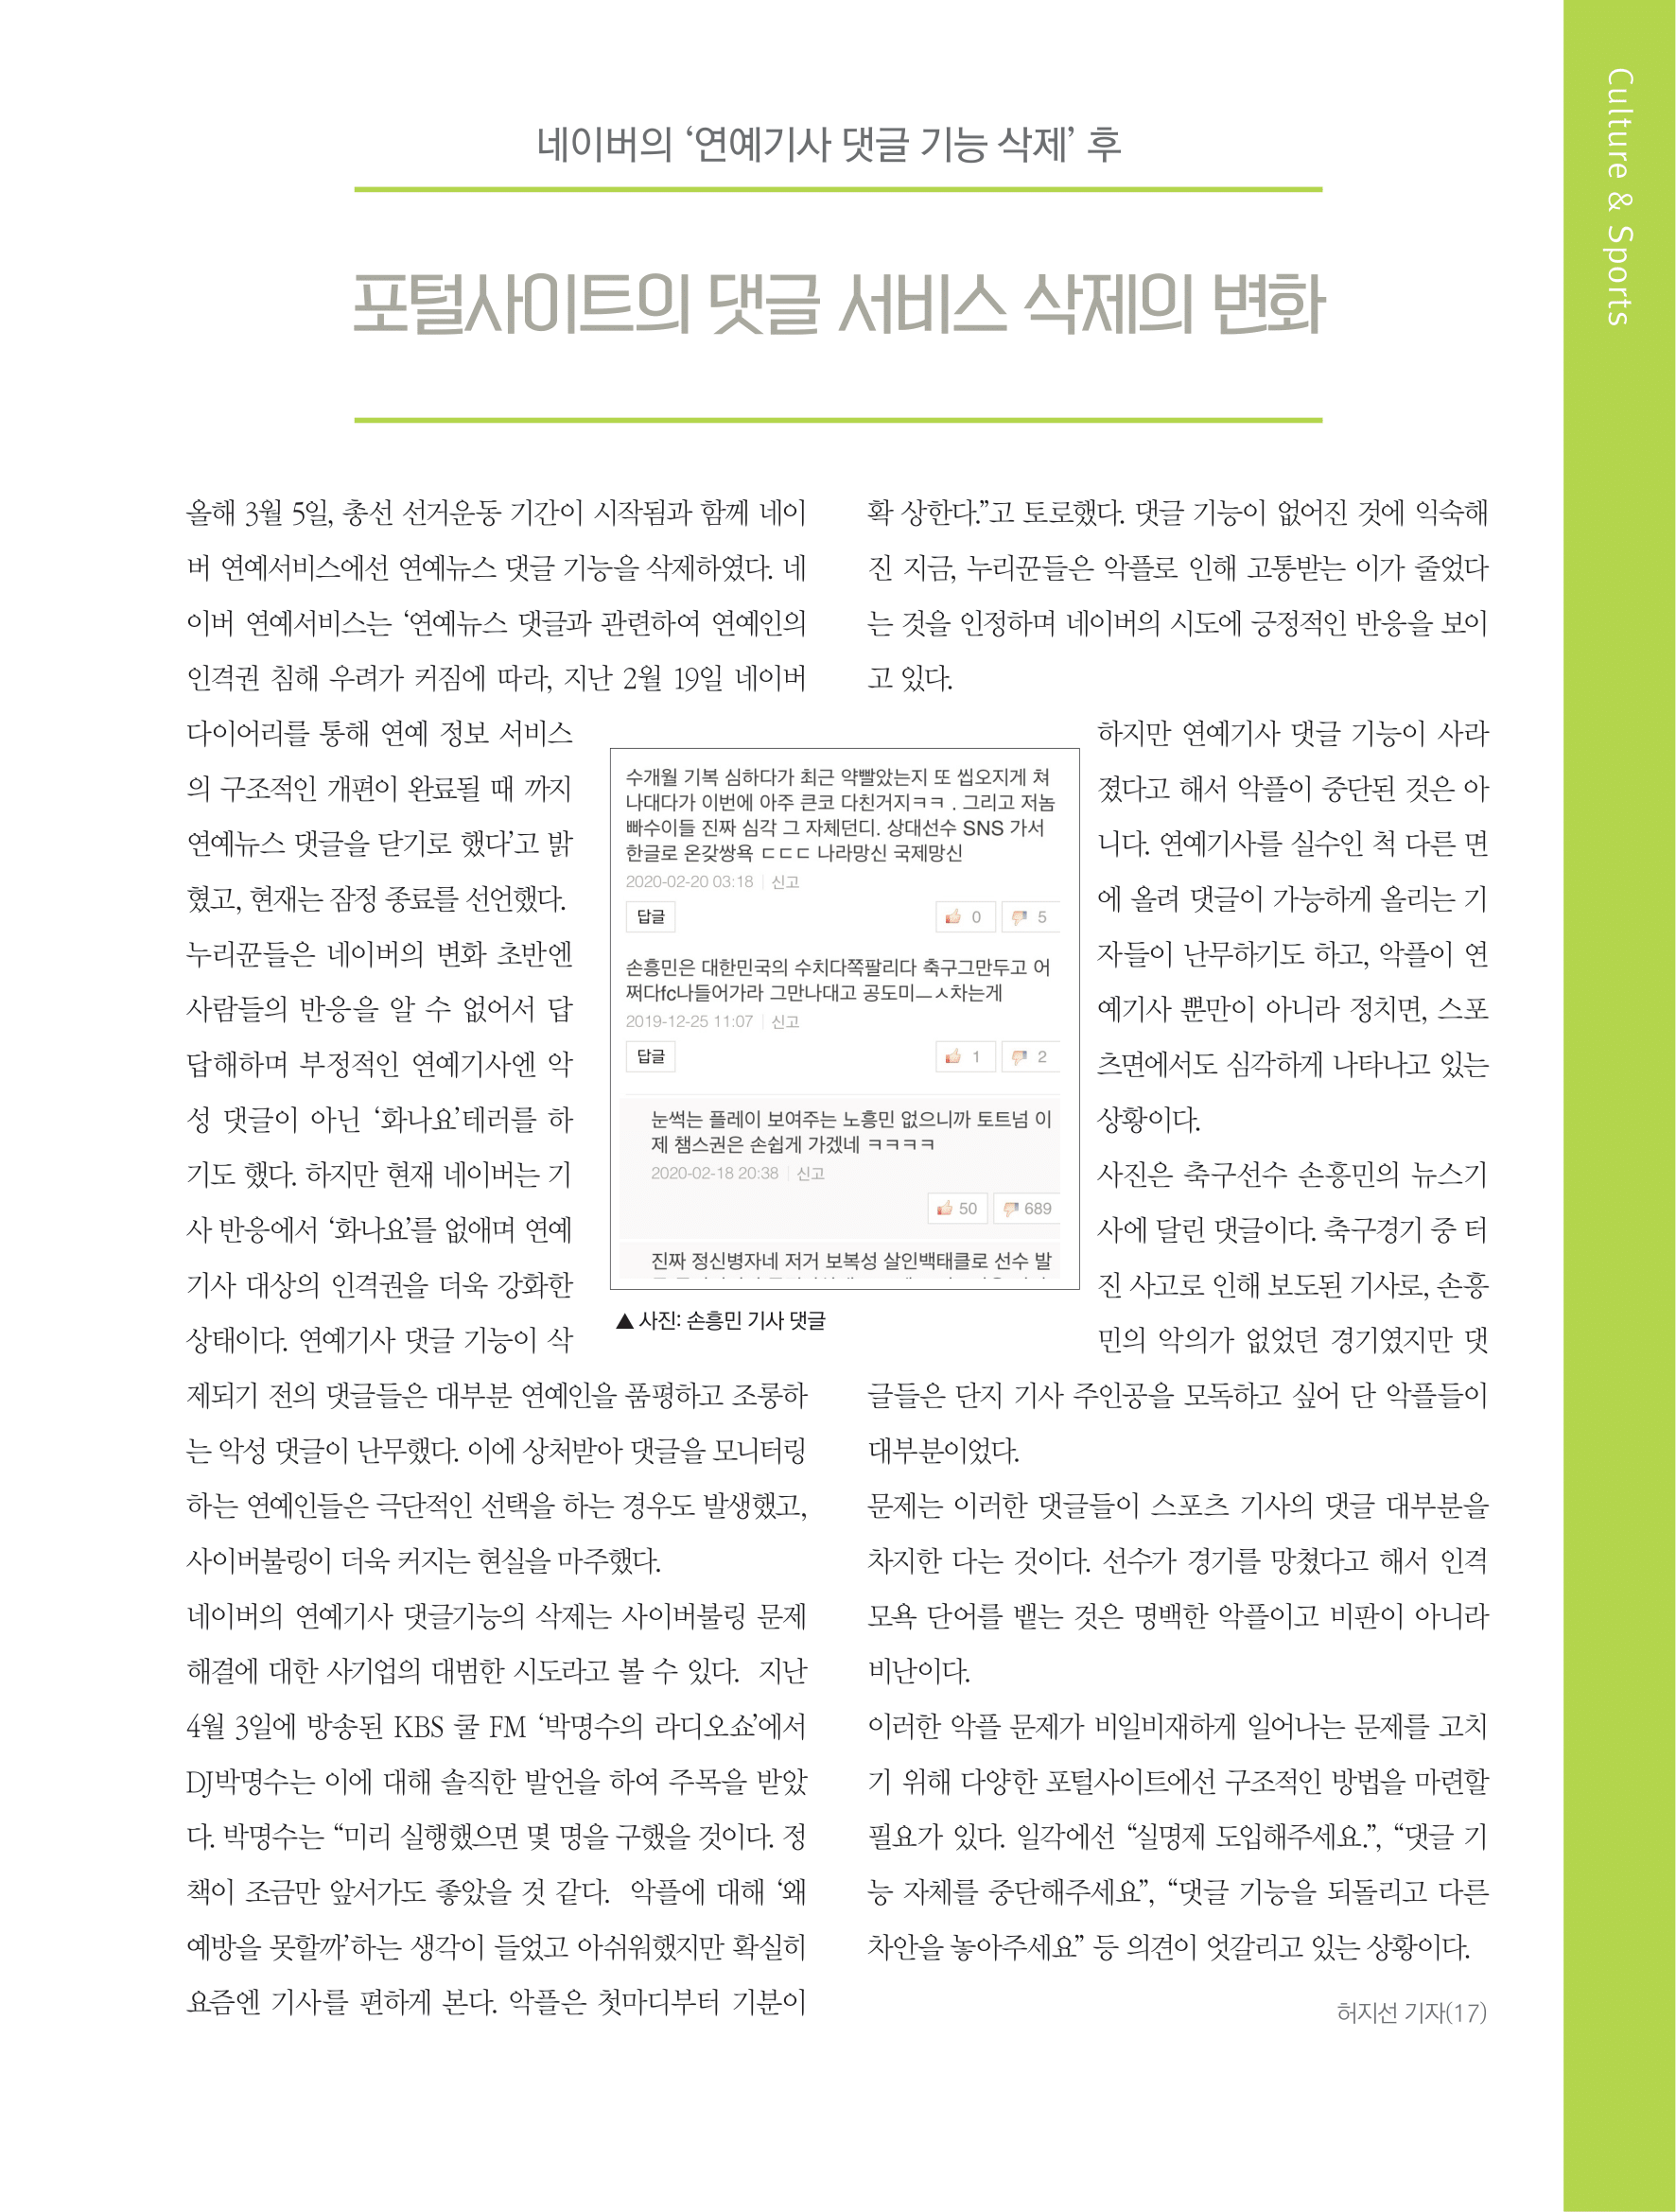 뜻새김 신문 75호 19